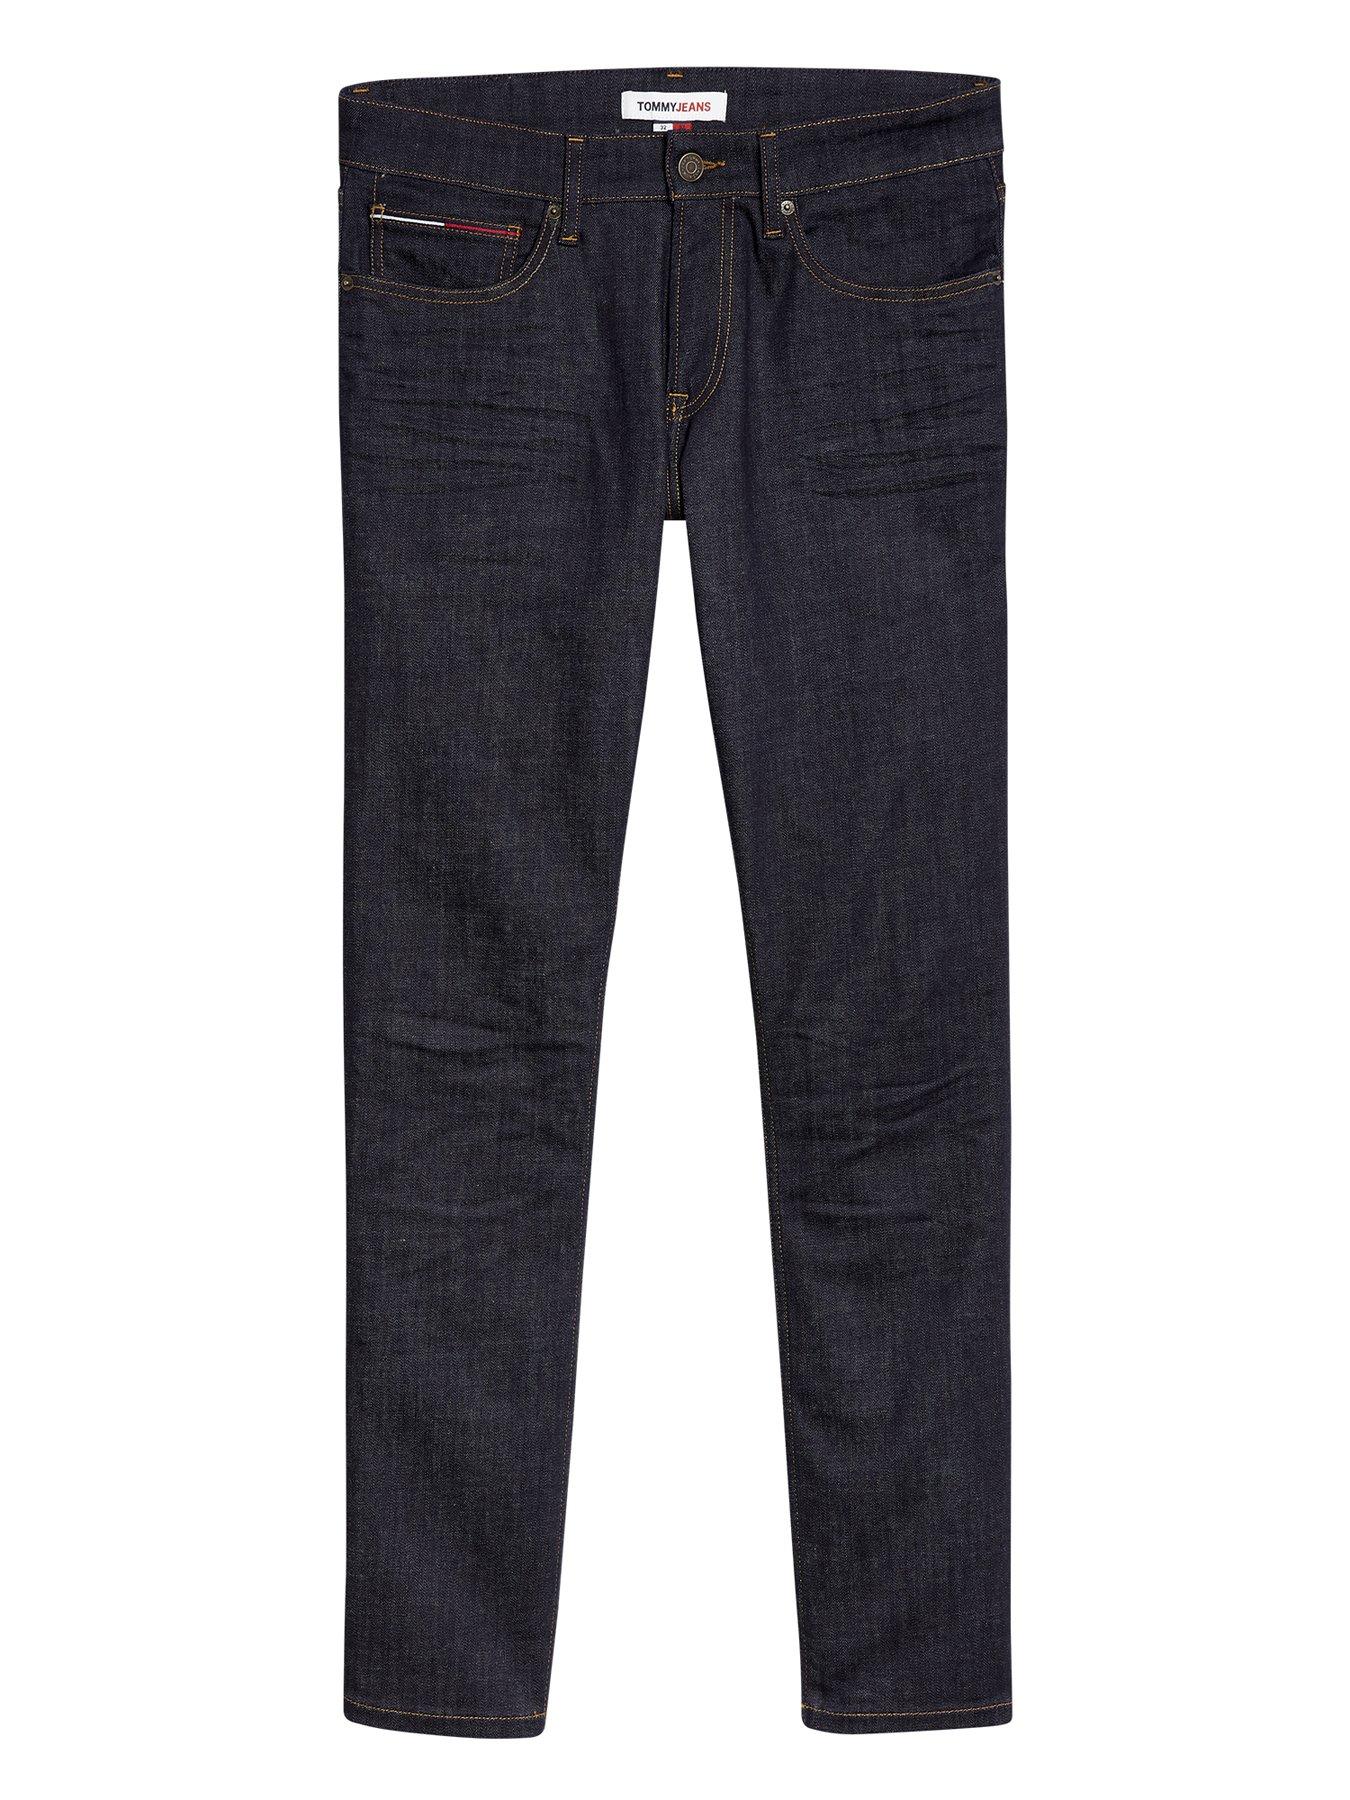 Tommy hilfiger | Jeans | www.littlewoodsireland.ie